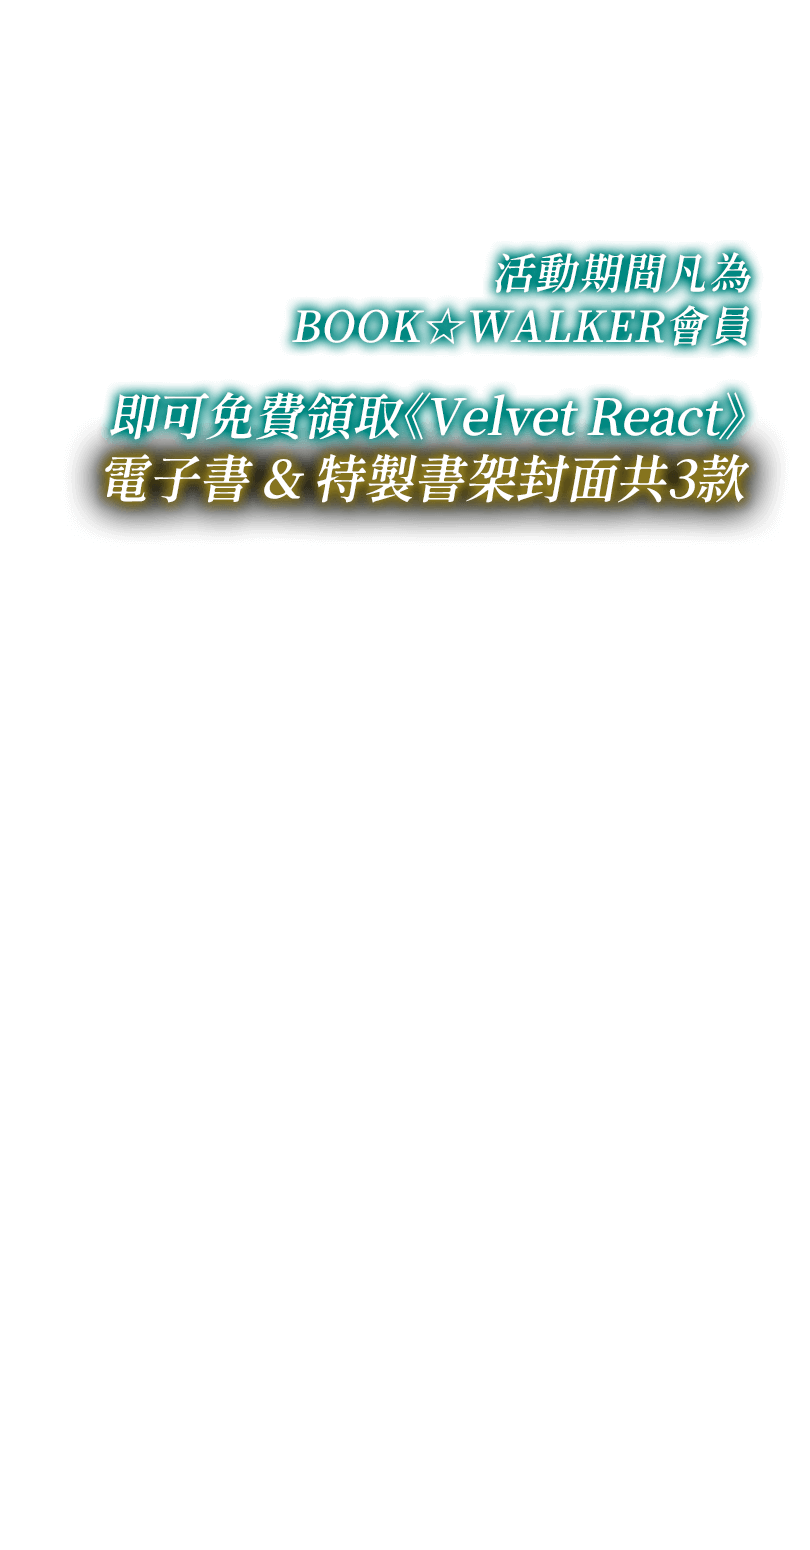 活動期間，凡為BOOK☆WALKER會員，即可免費領取《Velvet React》電子書&特製書架封面共3款